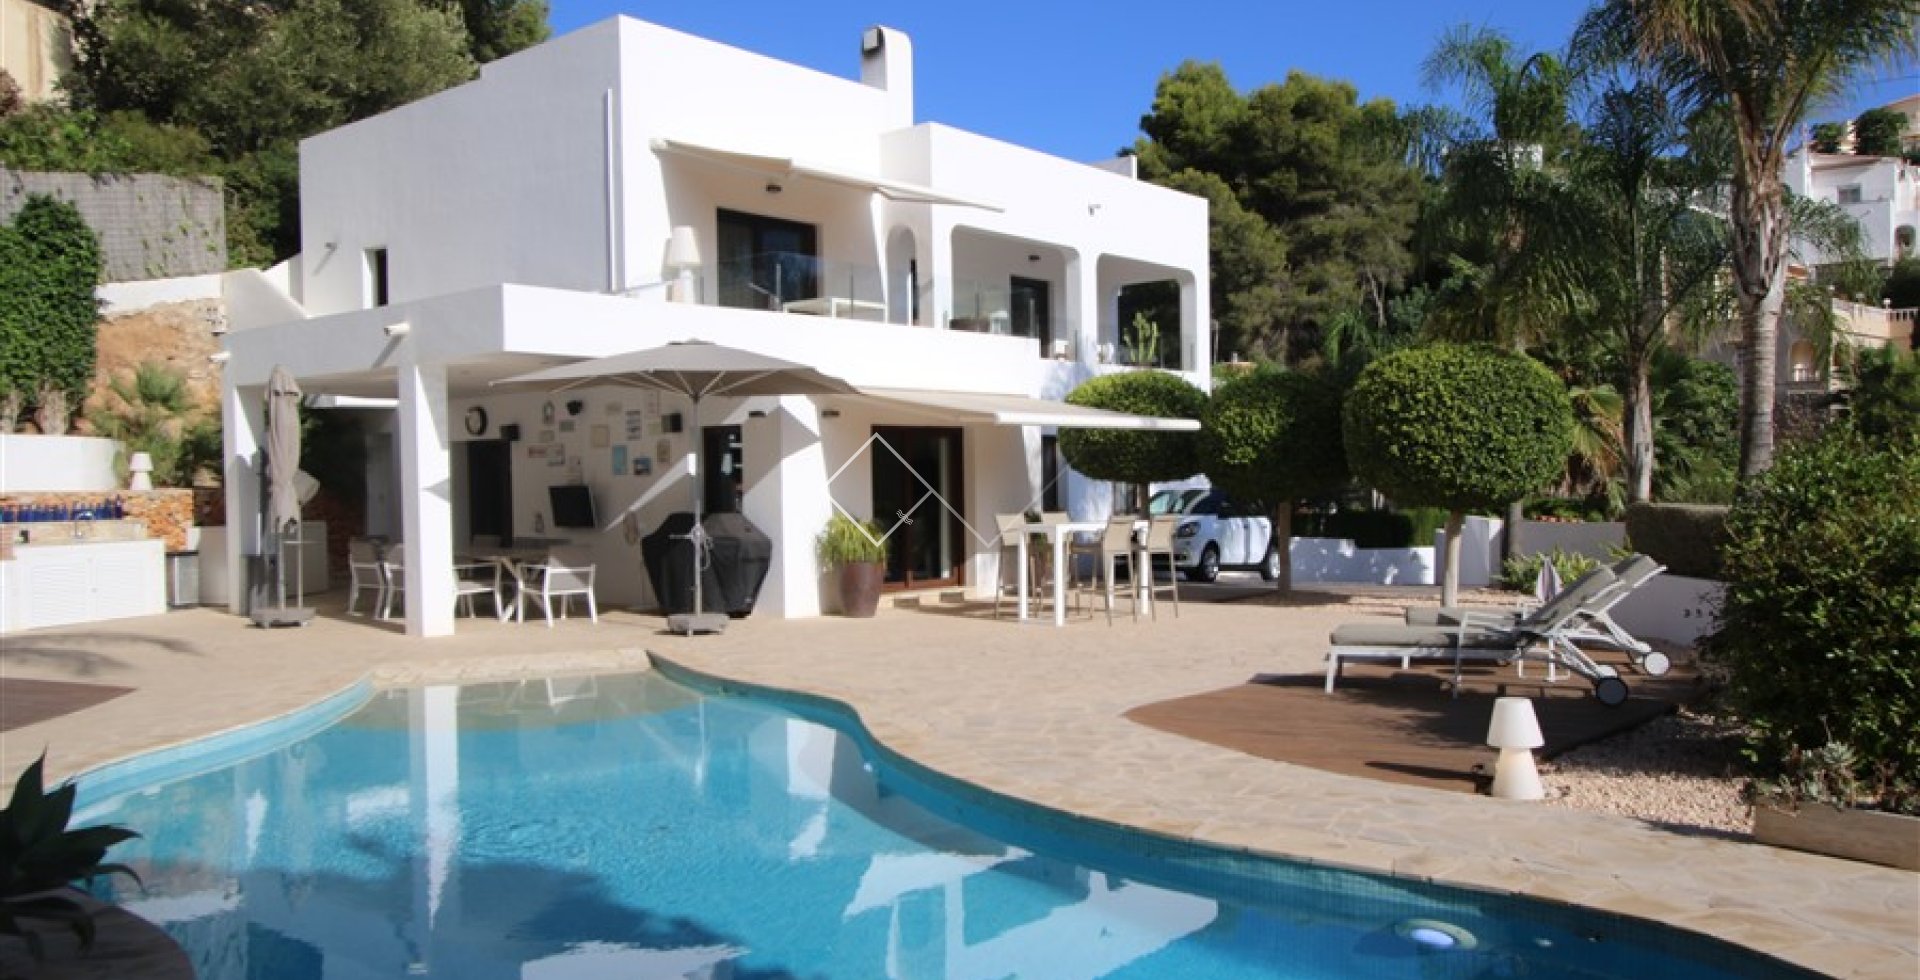 Ibiza Villa zu verkaufen in Benissa mit beheiztem Pool